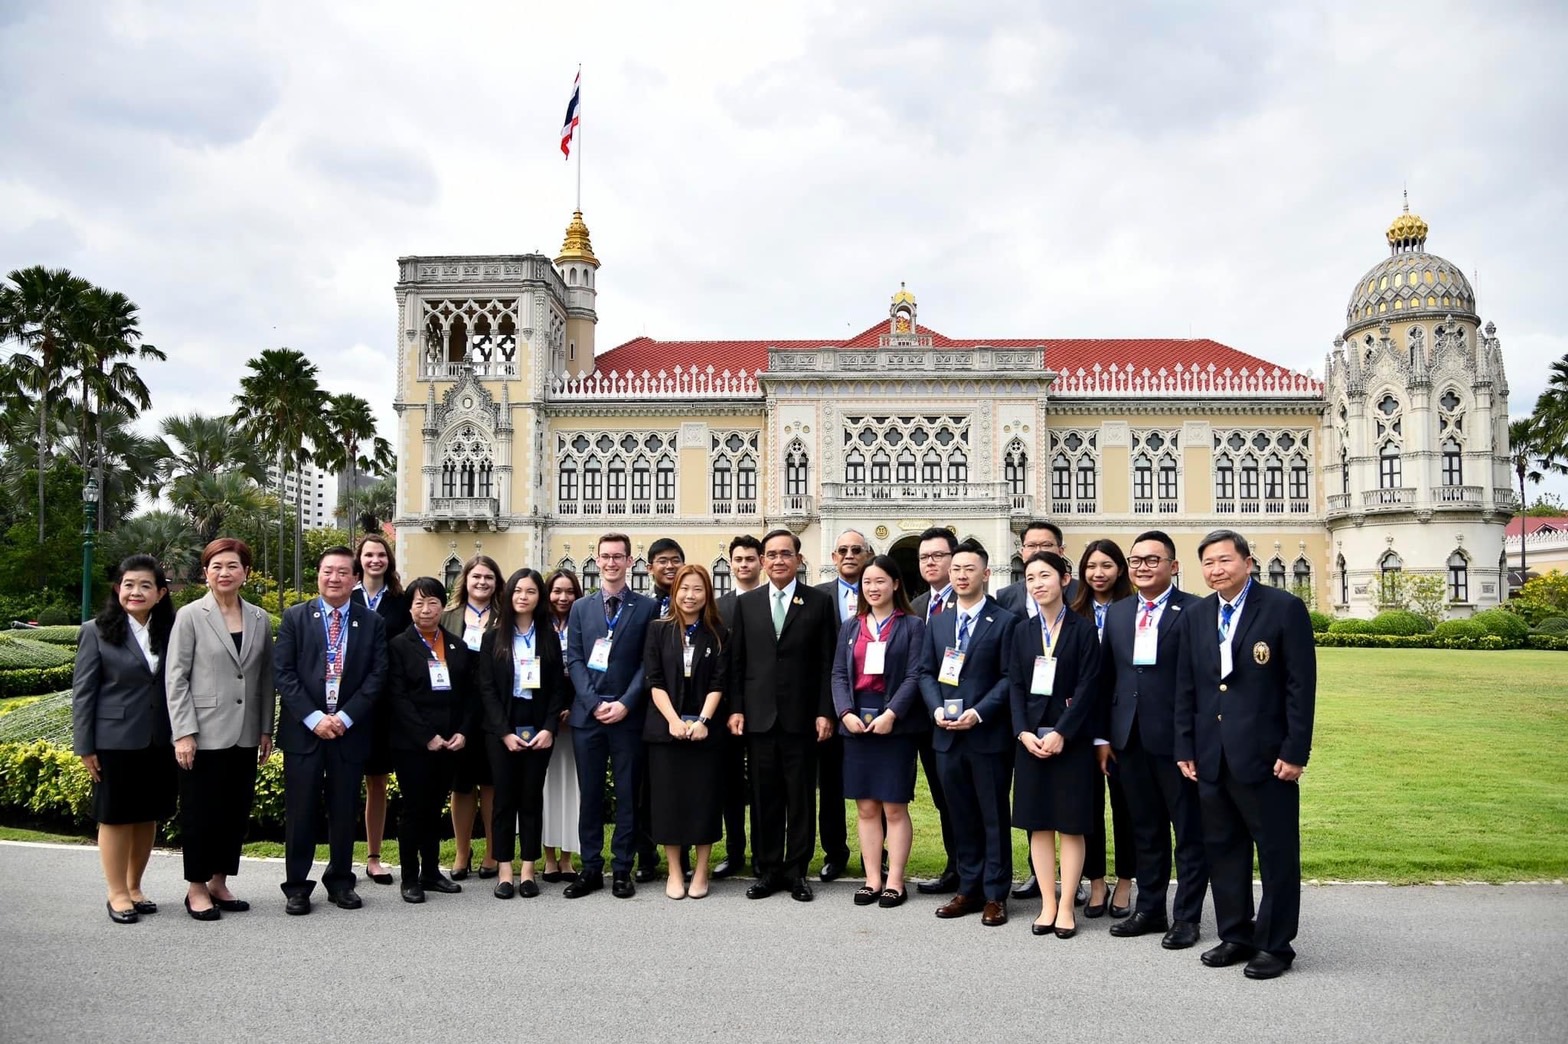 ม.ศรีปทุม เจ้าภาพร่วมฯจัดงานประชุมผู้นำเยาวชนฯ พร้อมคณะผู้แทนเยาวชน APEC VOTF 2022 เข้าพบนายกรัฐมนตรี “นำเสนอแถลงการณ์เยาวชน”